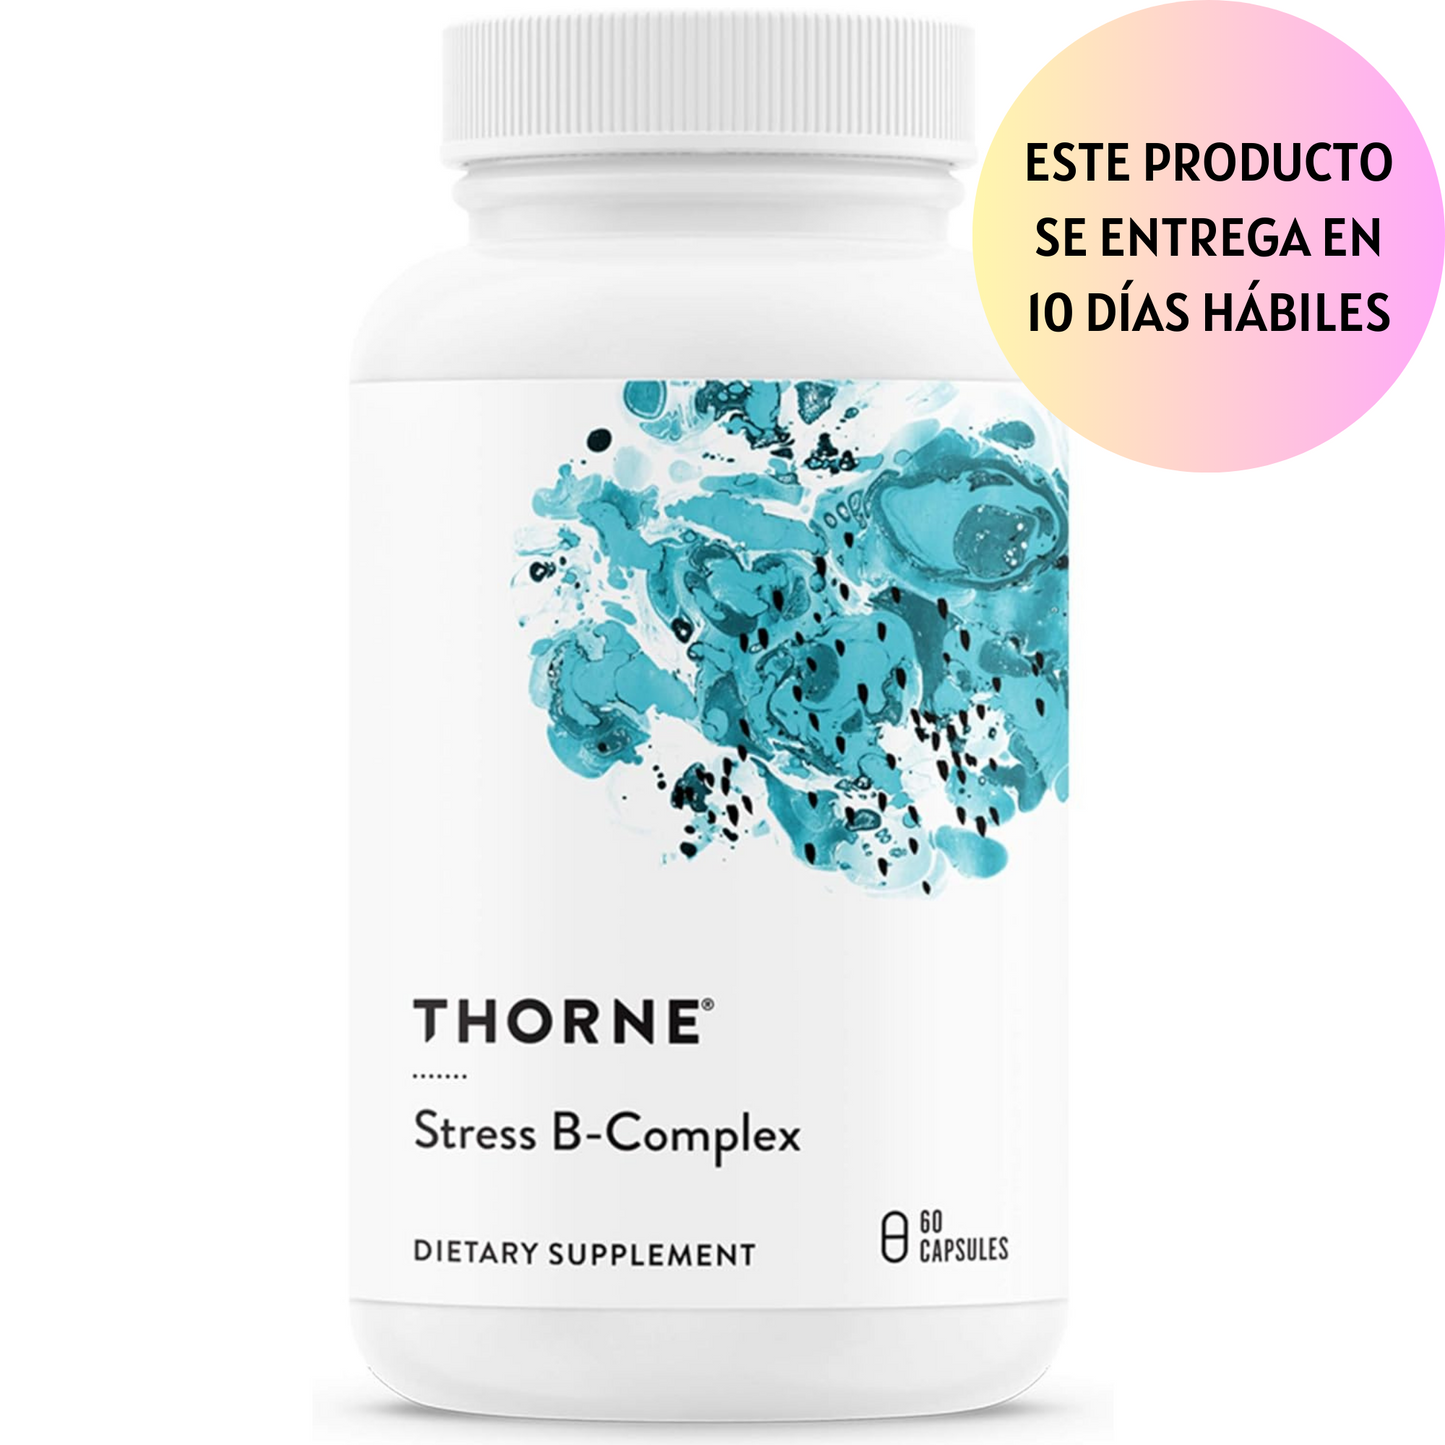 Thorne Stress B-Complex - Vitaminas B2, B6, B12 y folato en formas altamente absorbibles y activas, vitamina B5 extra para apoyo suprarrenal, manejo del estrés y función inmunológica, 60 cápsulas